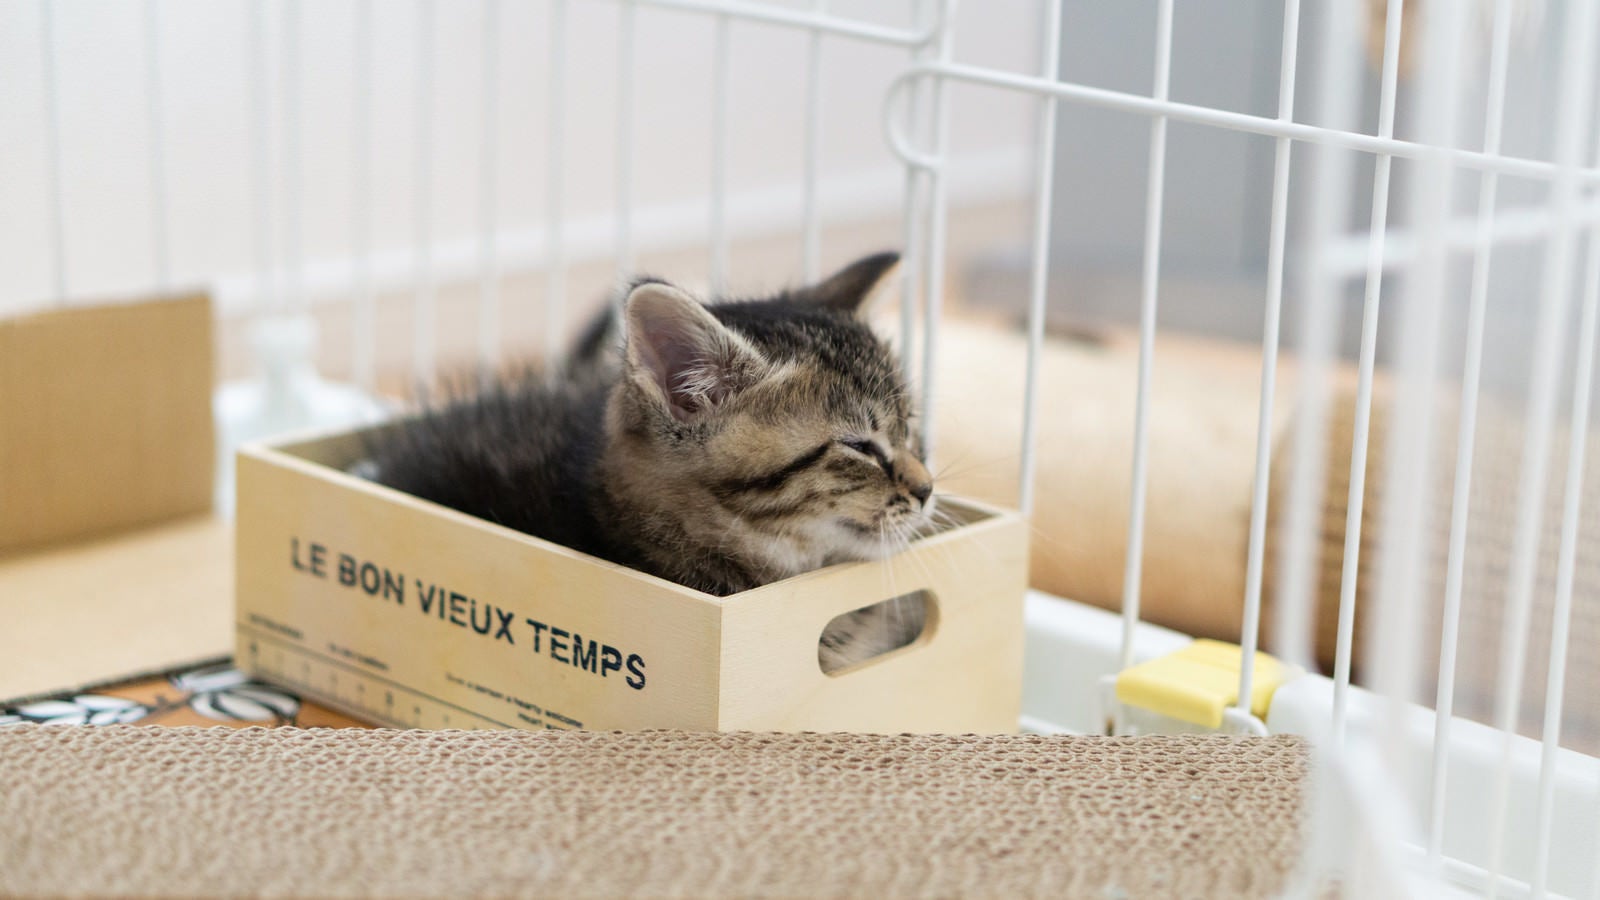 「小さいボックスに入る子猫」の写真